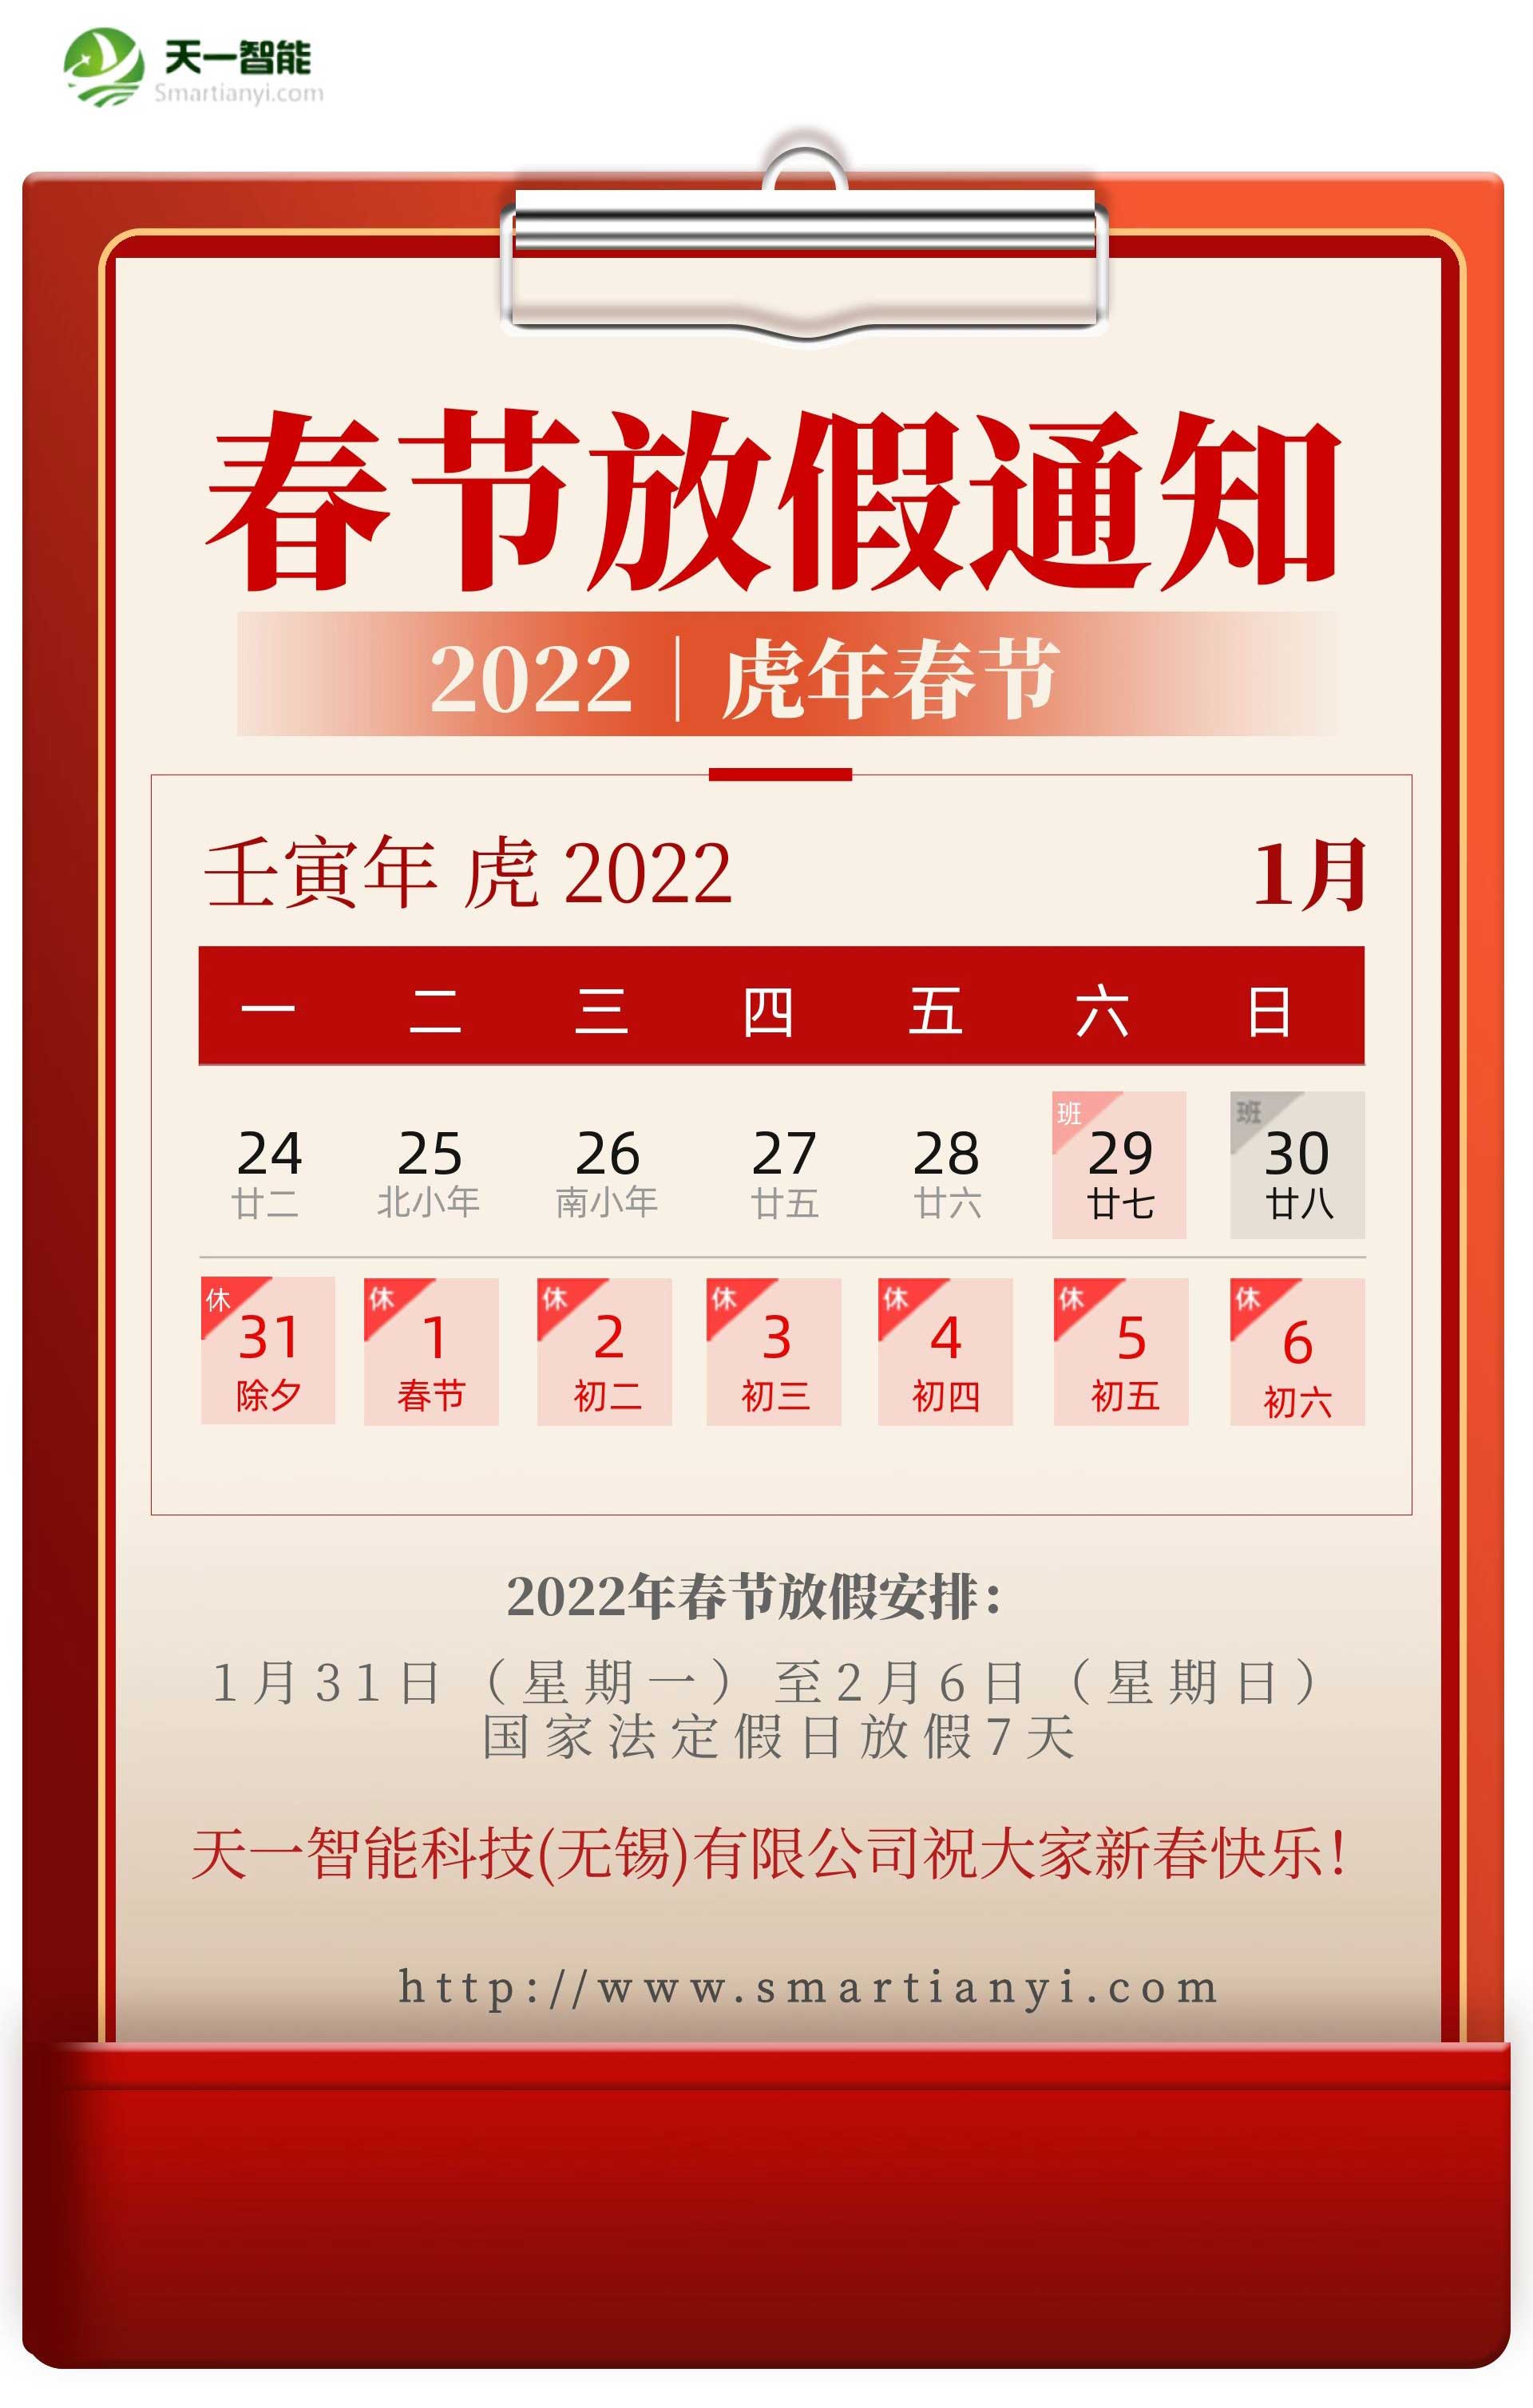 明博电竞·(中国)关于2022年春节放假安排的通知